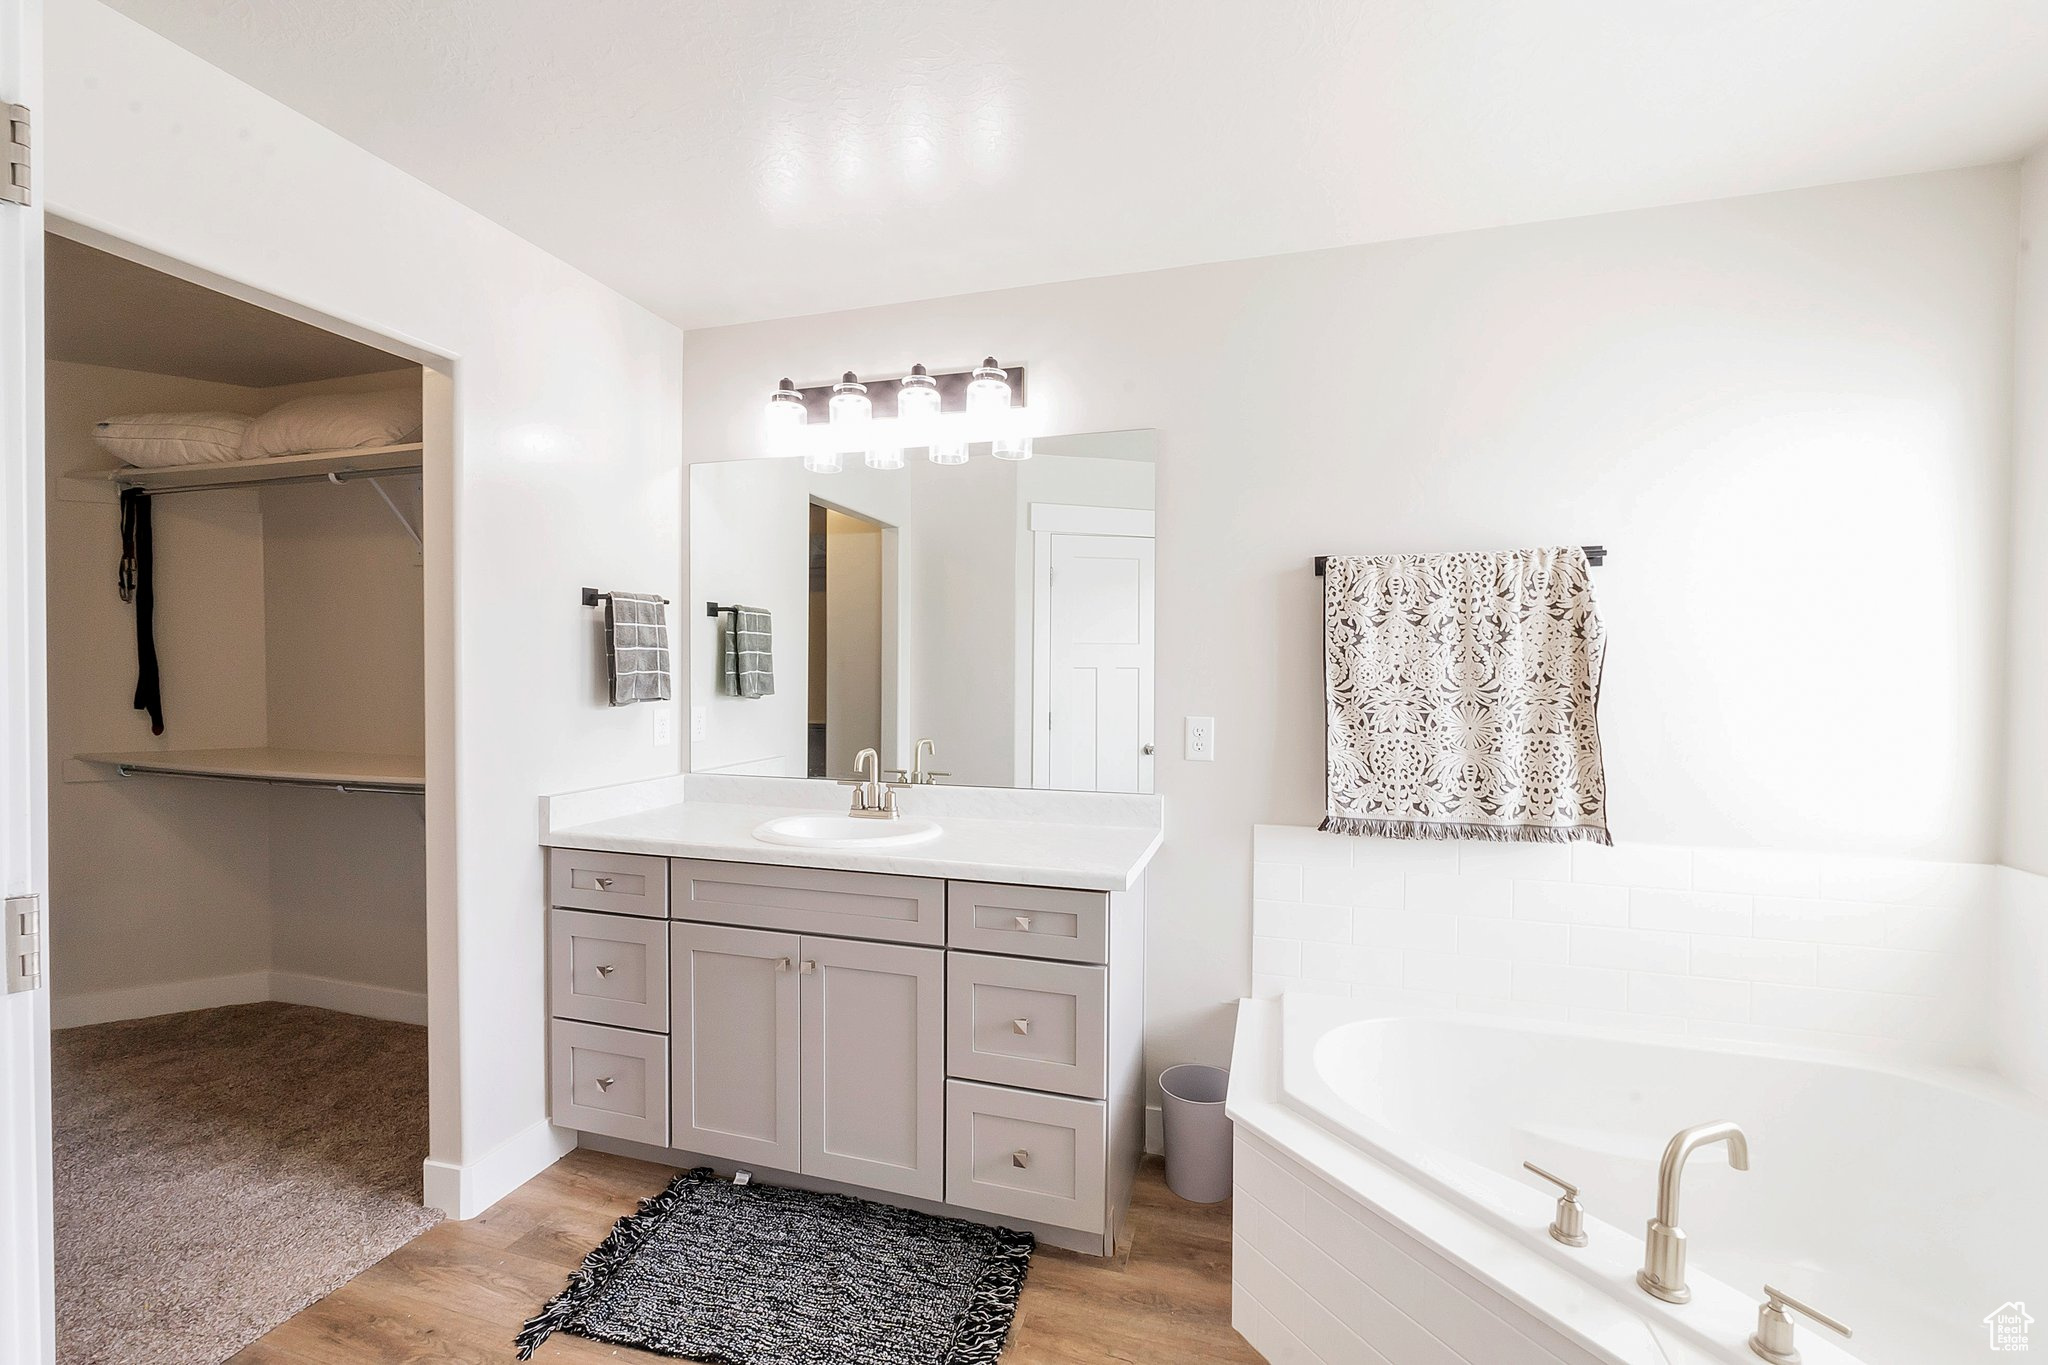 Bathroom featuring hardwood / wood-style floors, vanity, and tiled tub